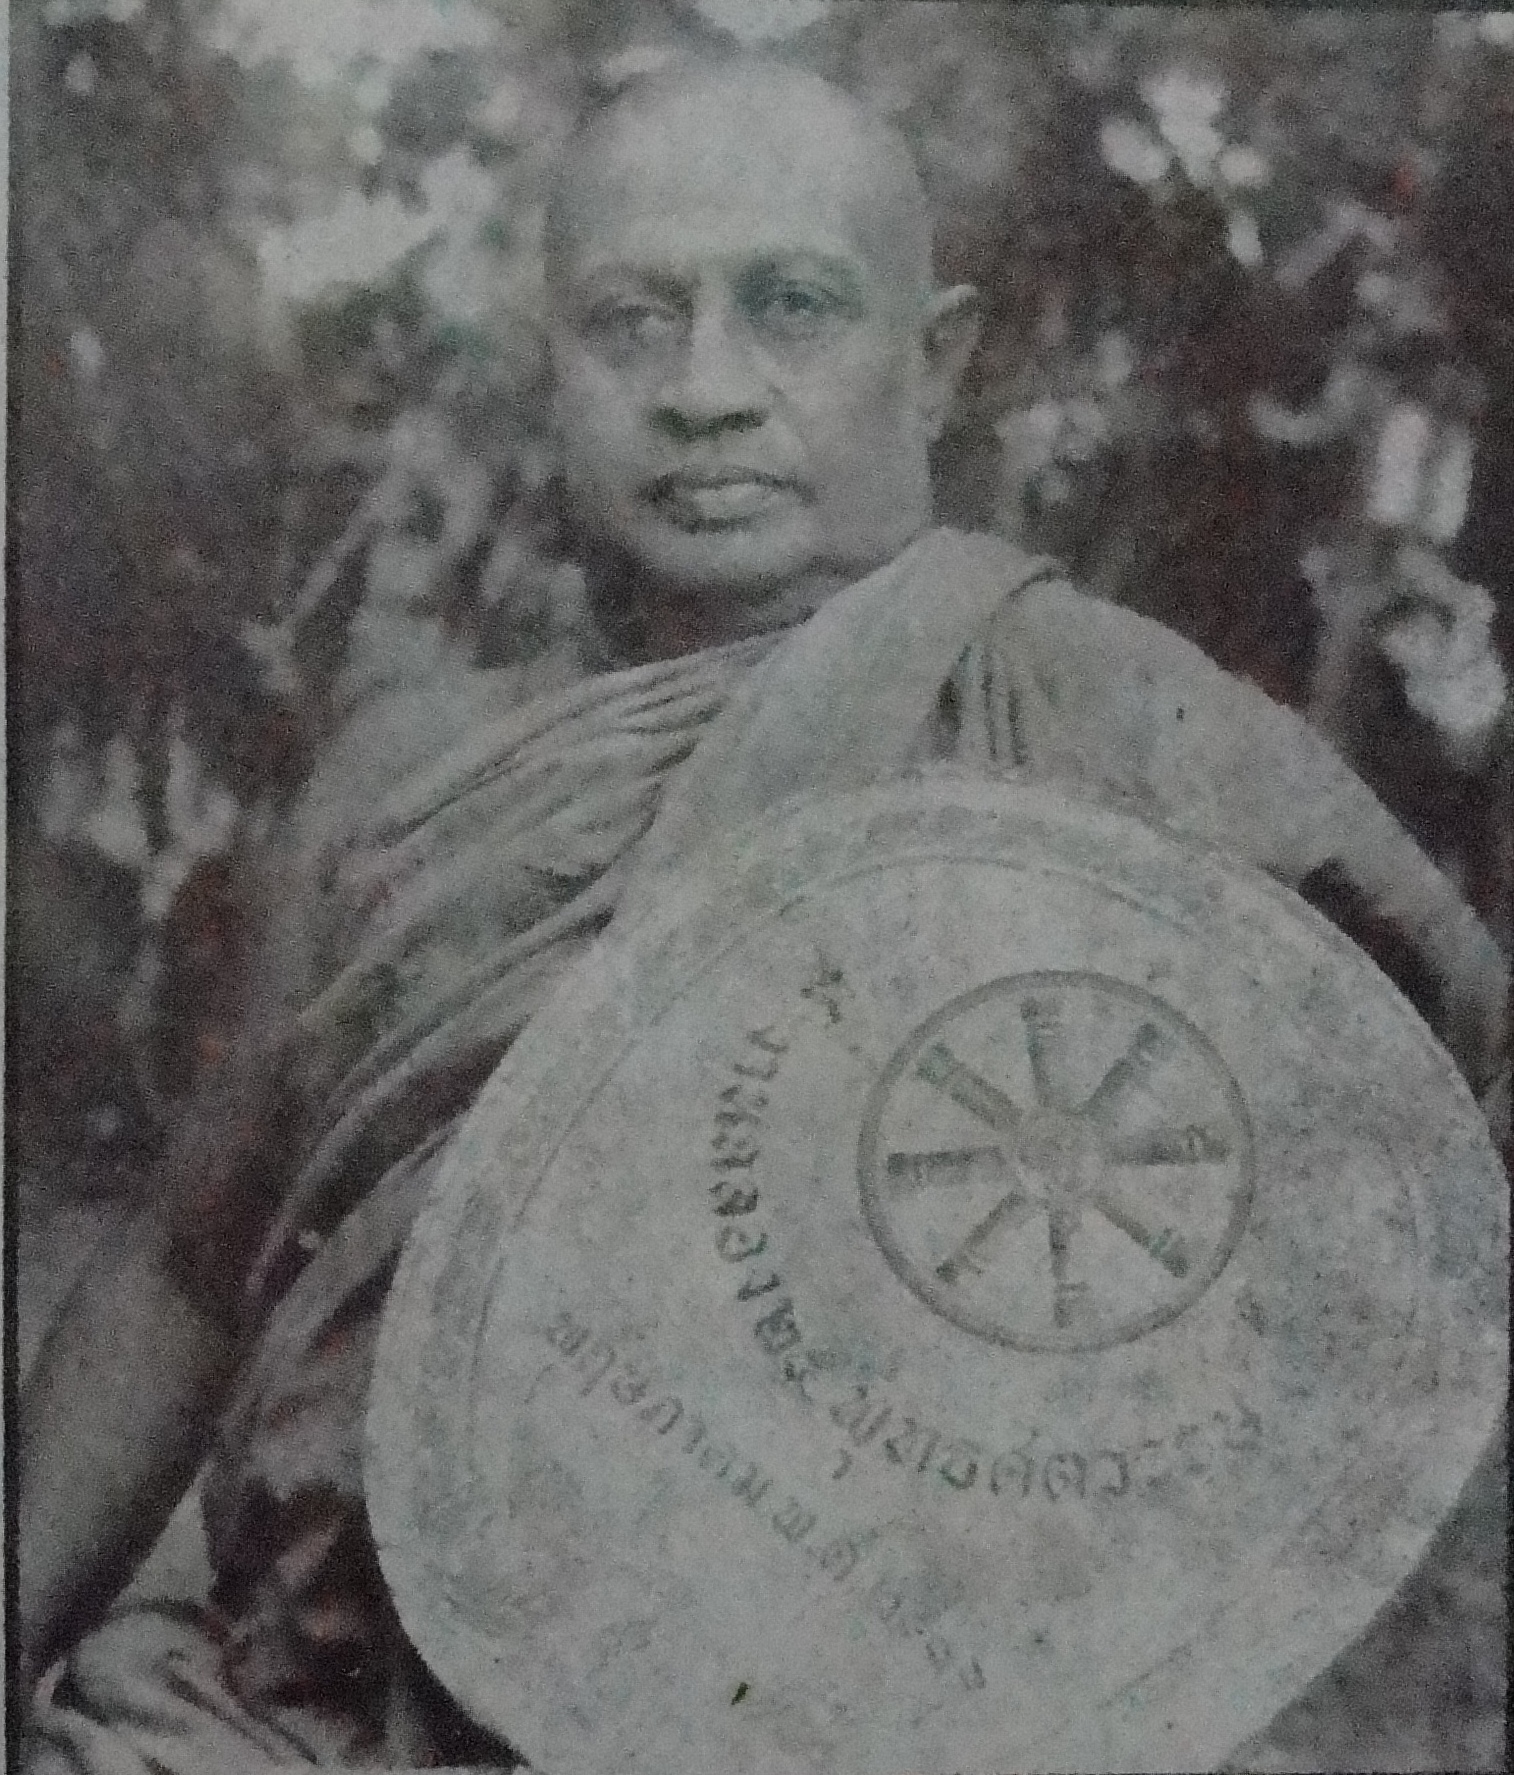 Ven. Sri Sumanathissa Vachissara Nayaka Thero